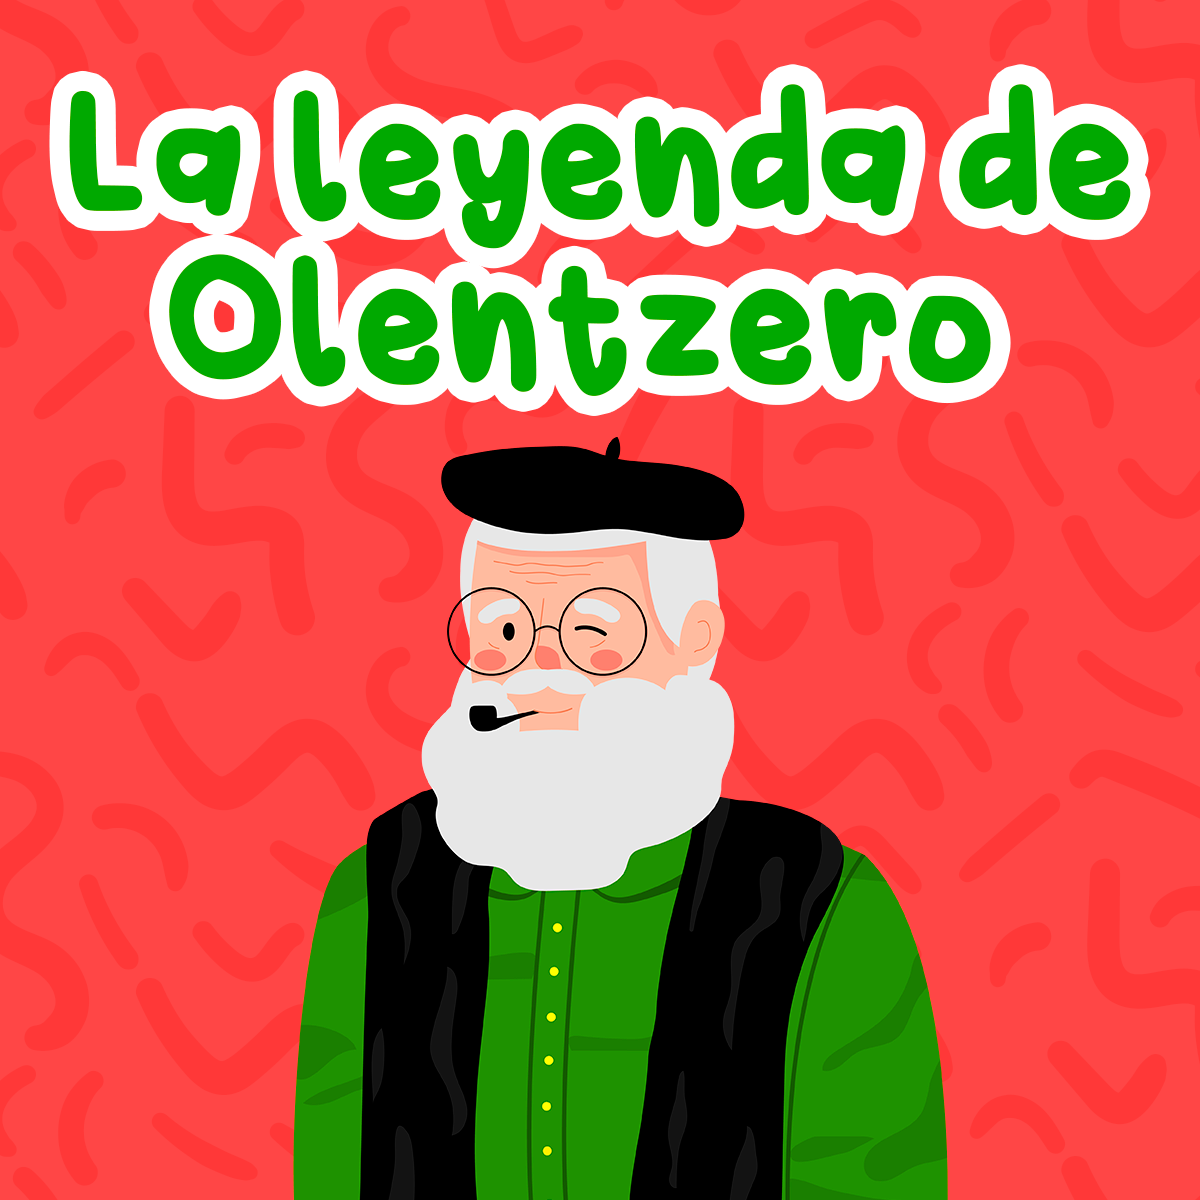 La leyenda de Olentzero